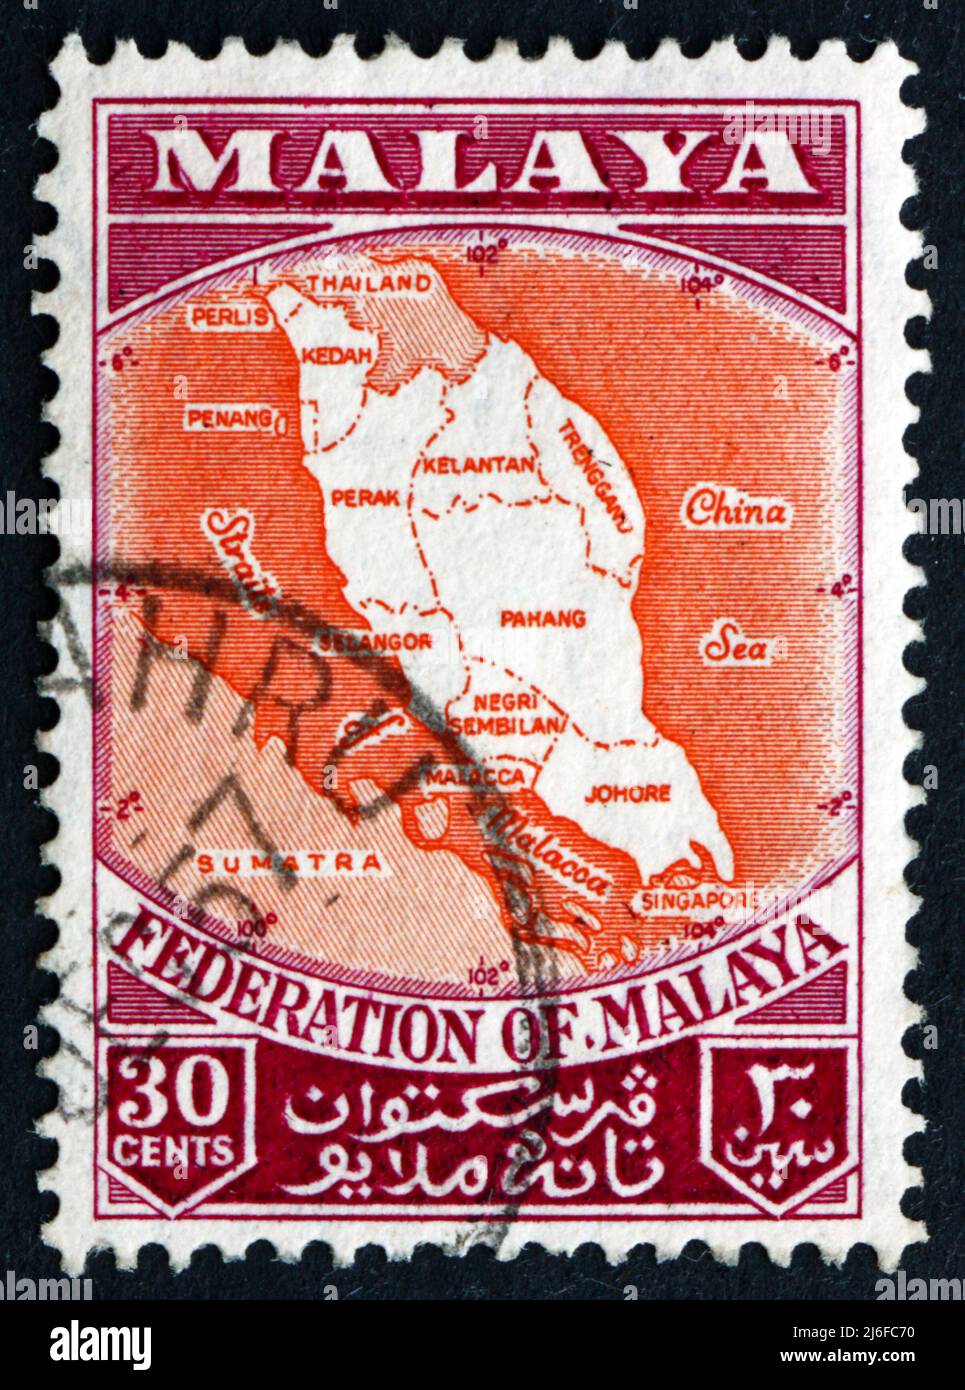 MALAYA - VERS 1957: Un timbre imprimé à Malaya montre la carte de la Fédération de Malaya, vers 1957 Banque D'Images